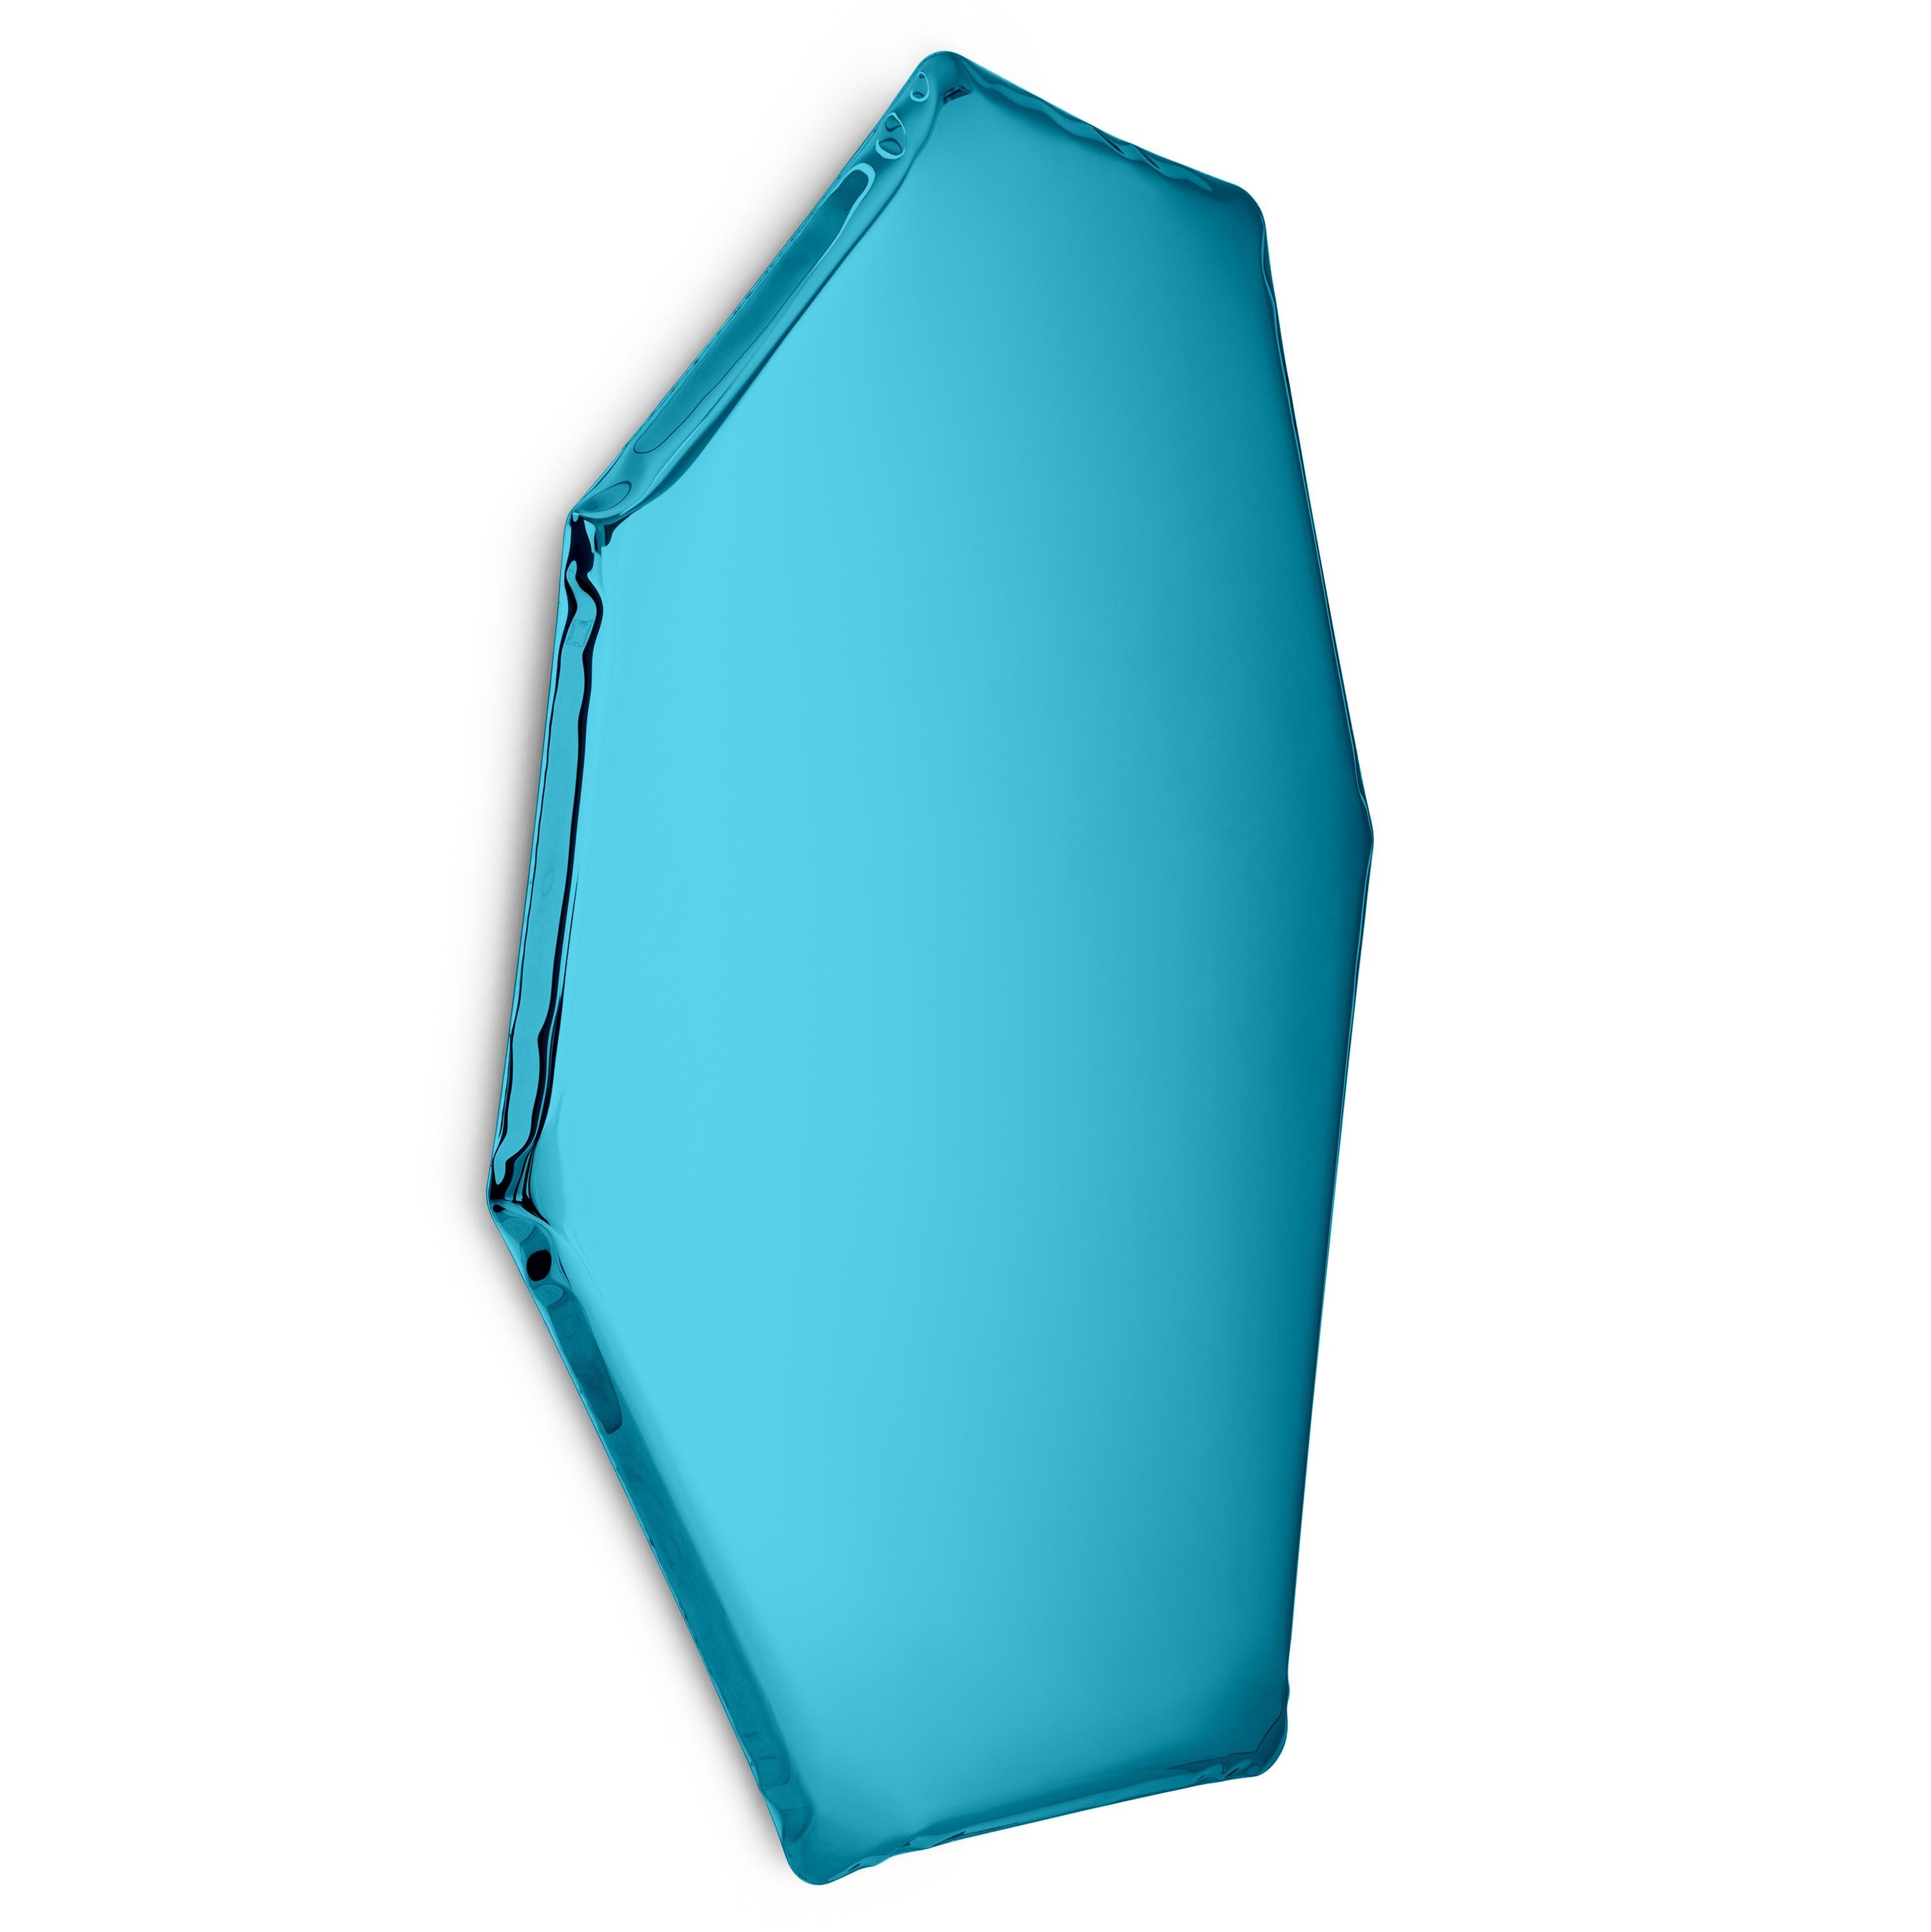 Miroir mural sculptural Sapphire C2 de Zieta
Dimensions : D 6 x L 94 x H 149 cm 
Matériau : Acier inoxydable. 
Finition : Saphir.
Disponible en finitions : Acier inoxydable, bleu espace profond, émeraude, saphir, saphir/émeraude, matière noire et